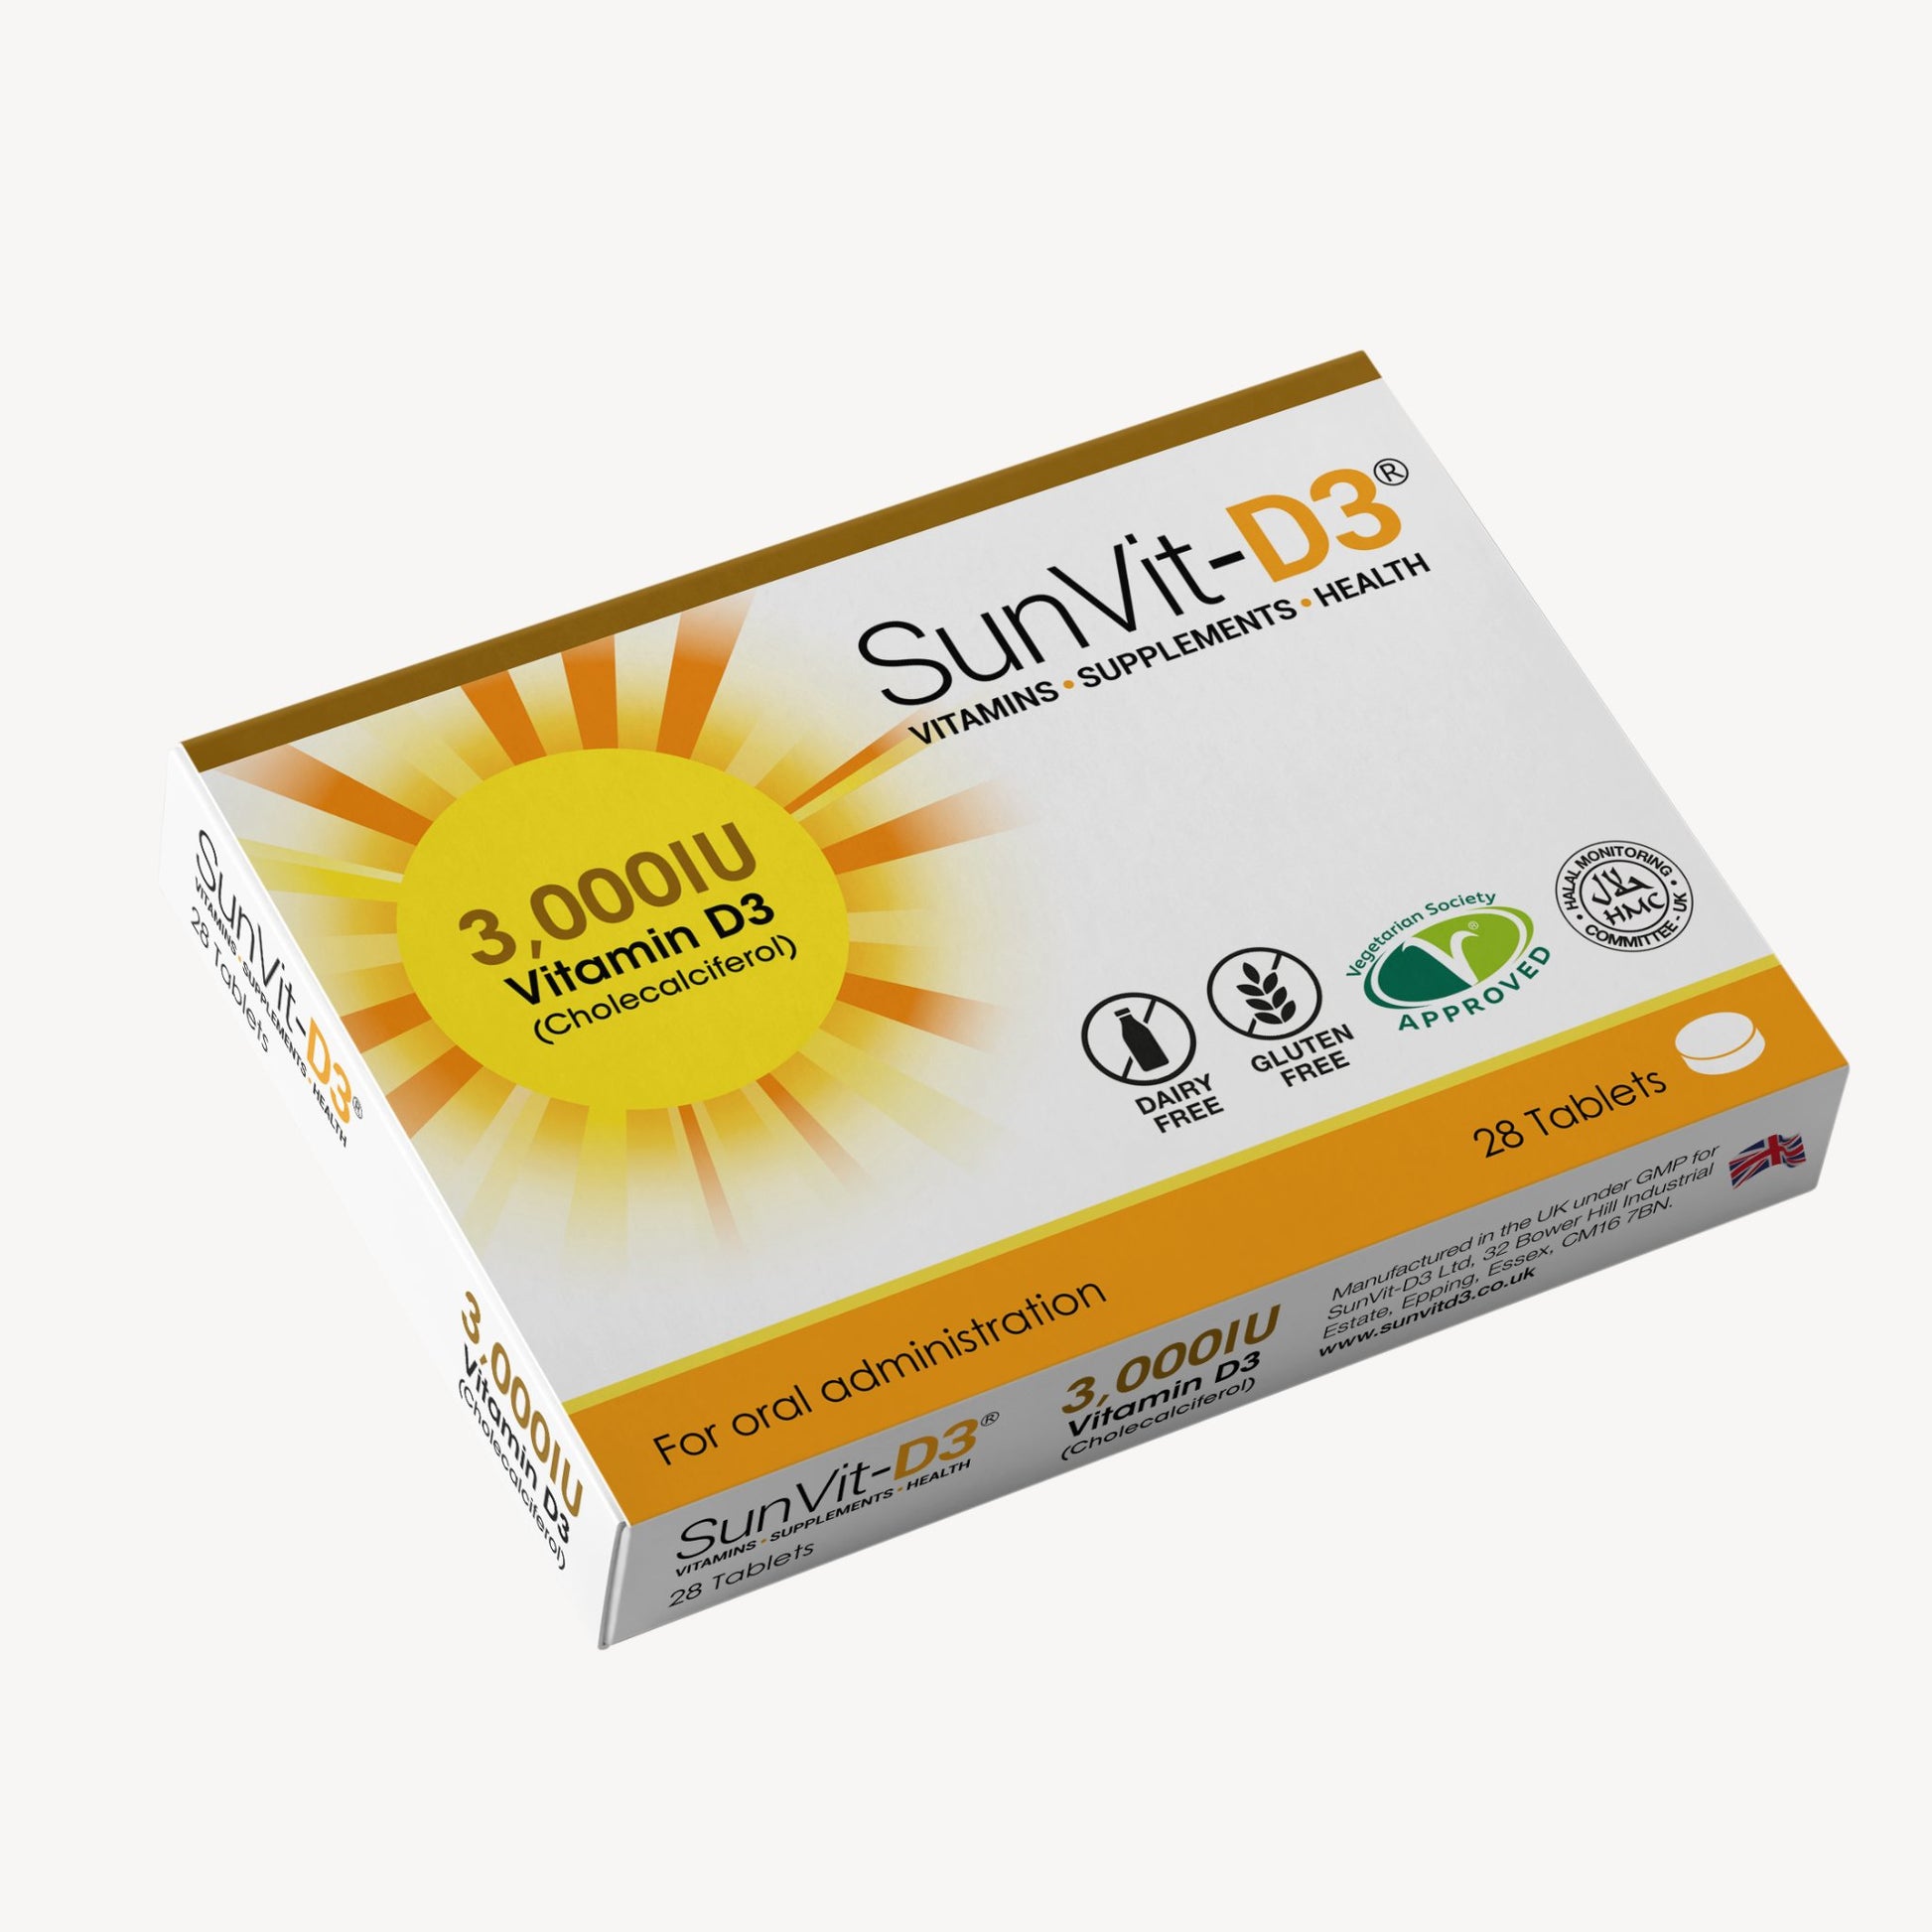 Vitamin D3 3,000IU (75ug) 28 High Strength Daily Tablets - SunVit-D3